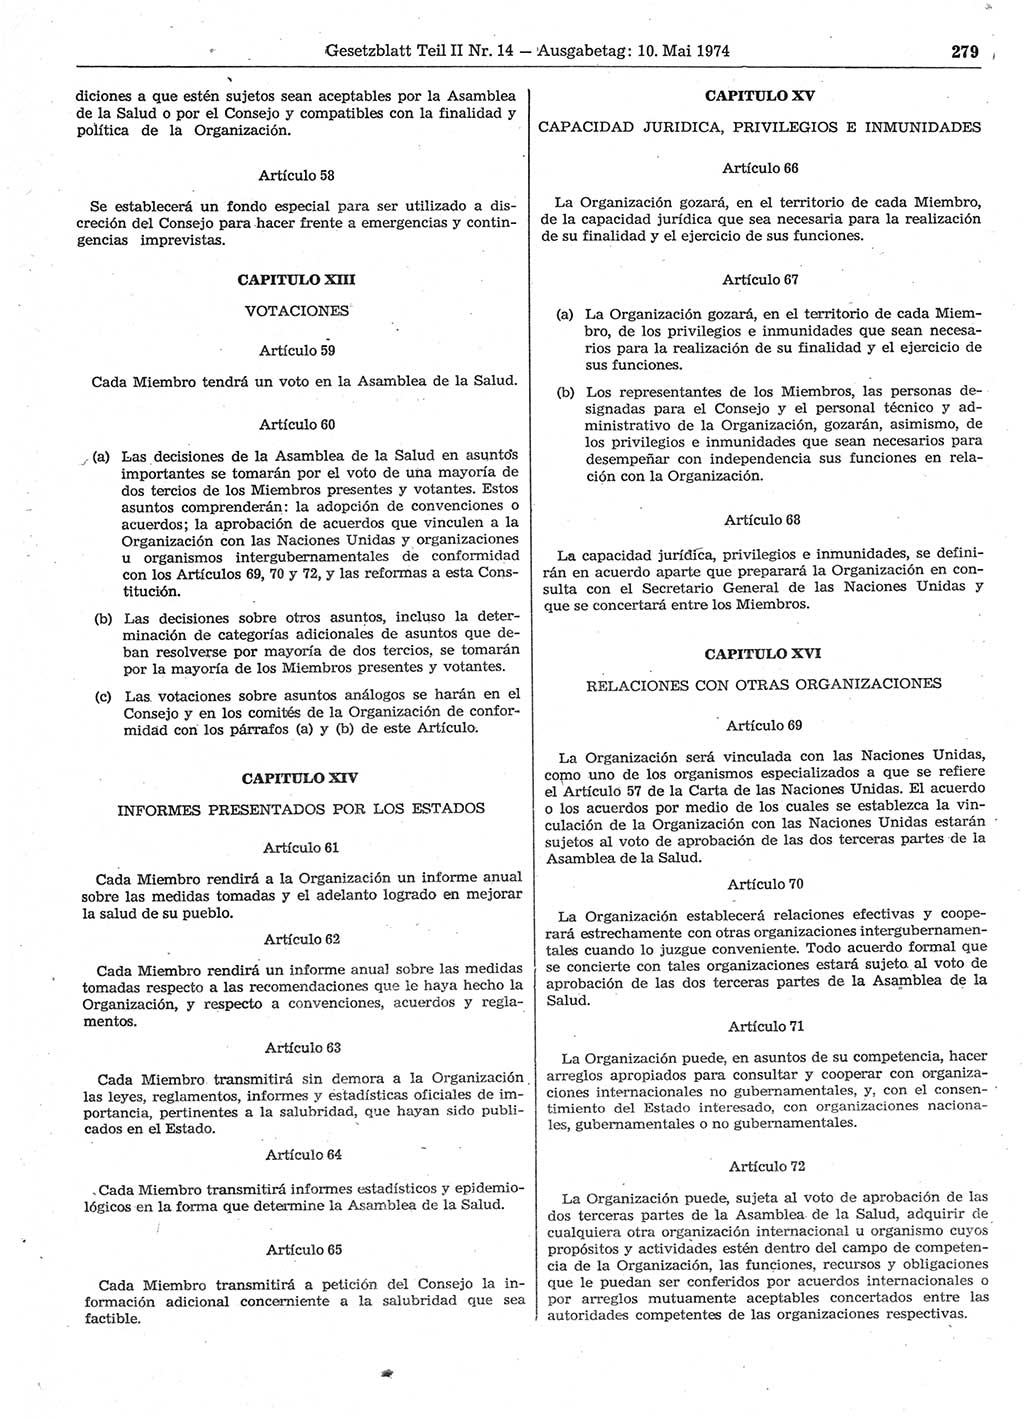 Gesetzblatt (GBl.) der Deutschen Demokratischen Republik (DDR) Teil ⅠⅠ 1974, Seite 279 (GBl. DDR ⅠⅠ 1974, S. 279)